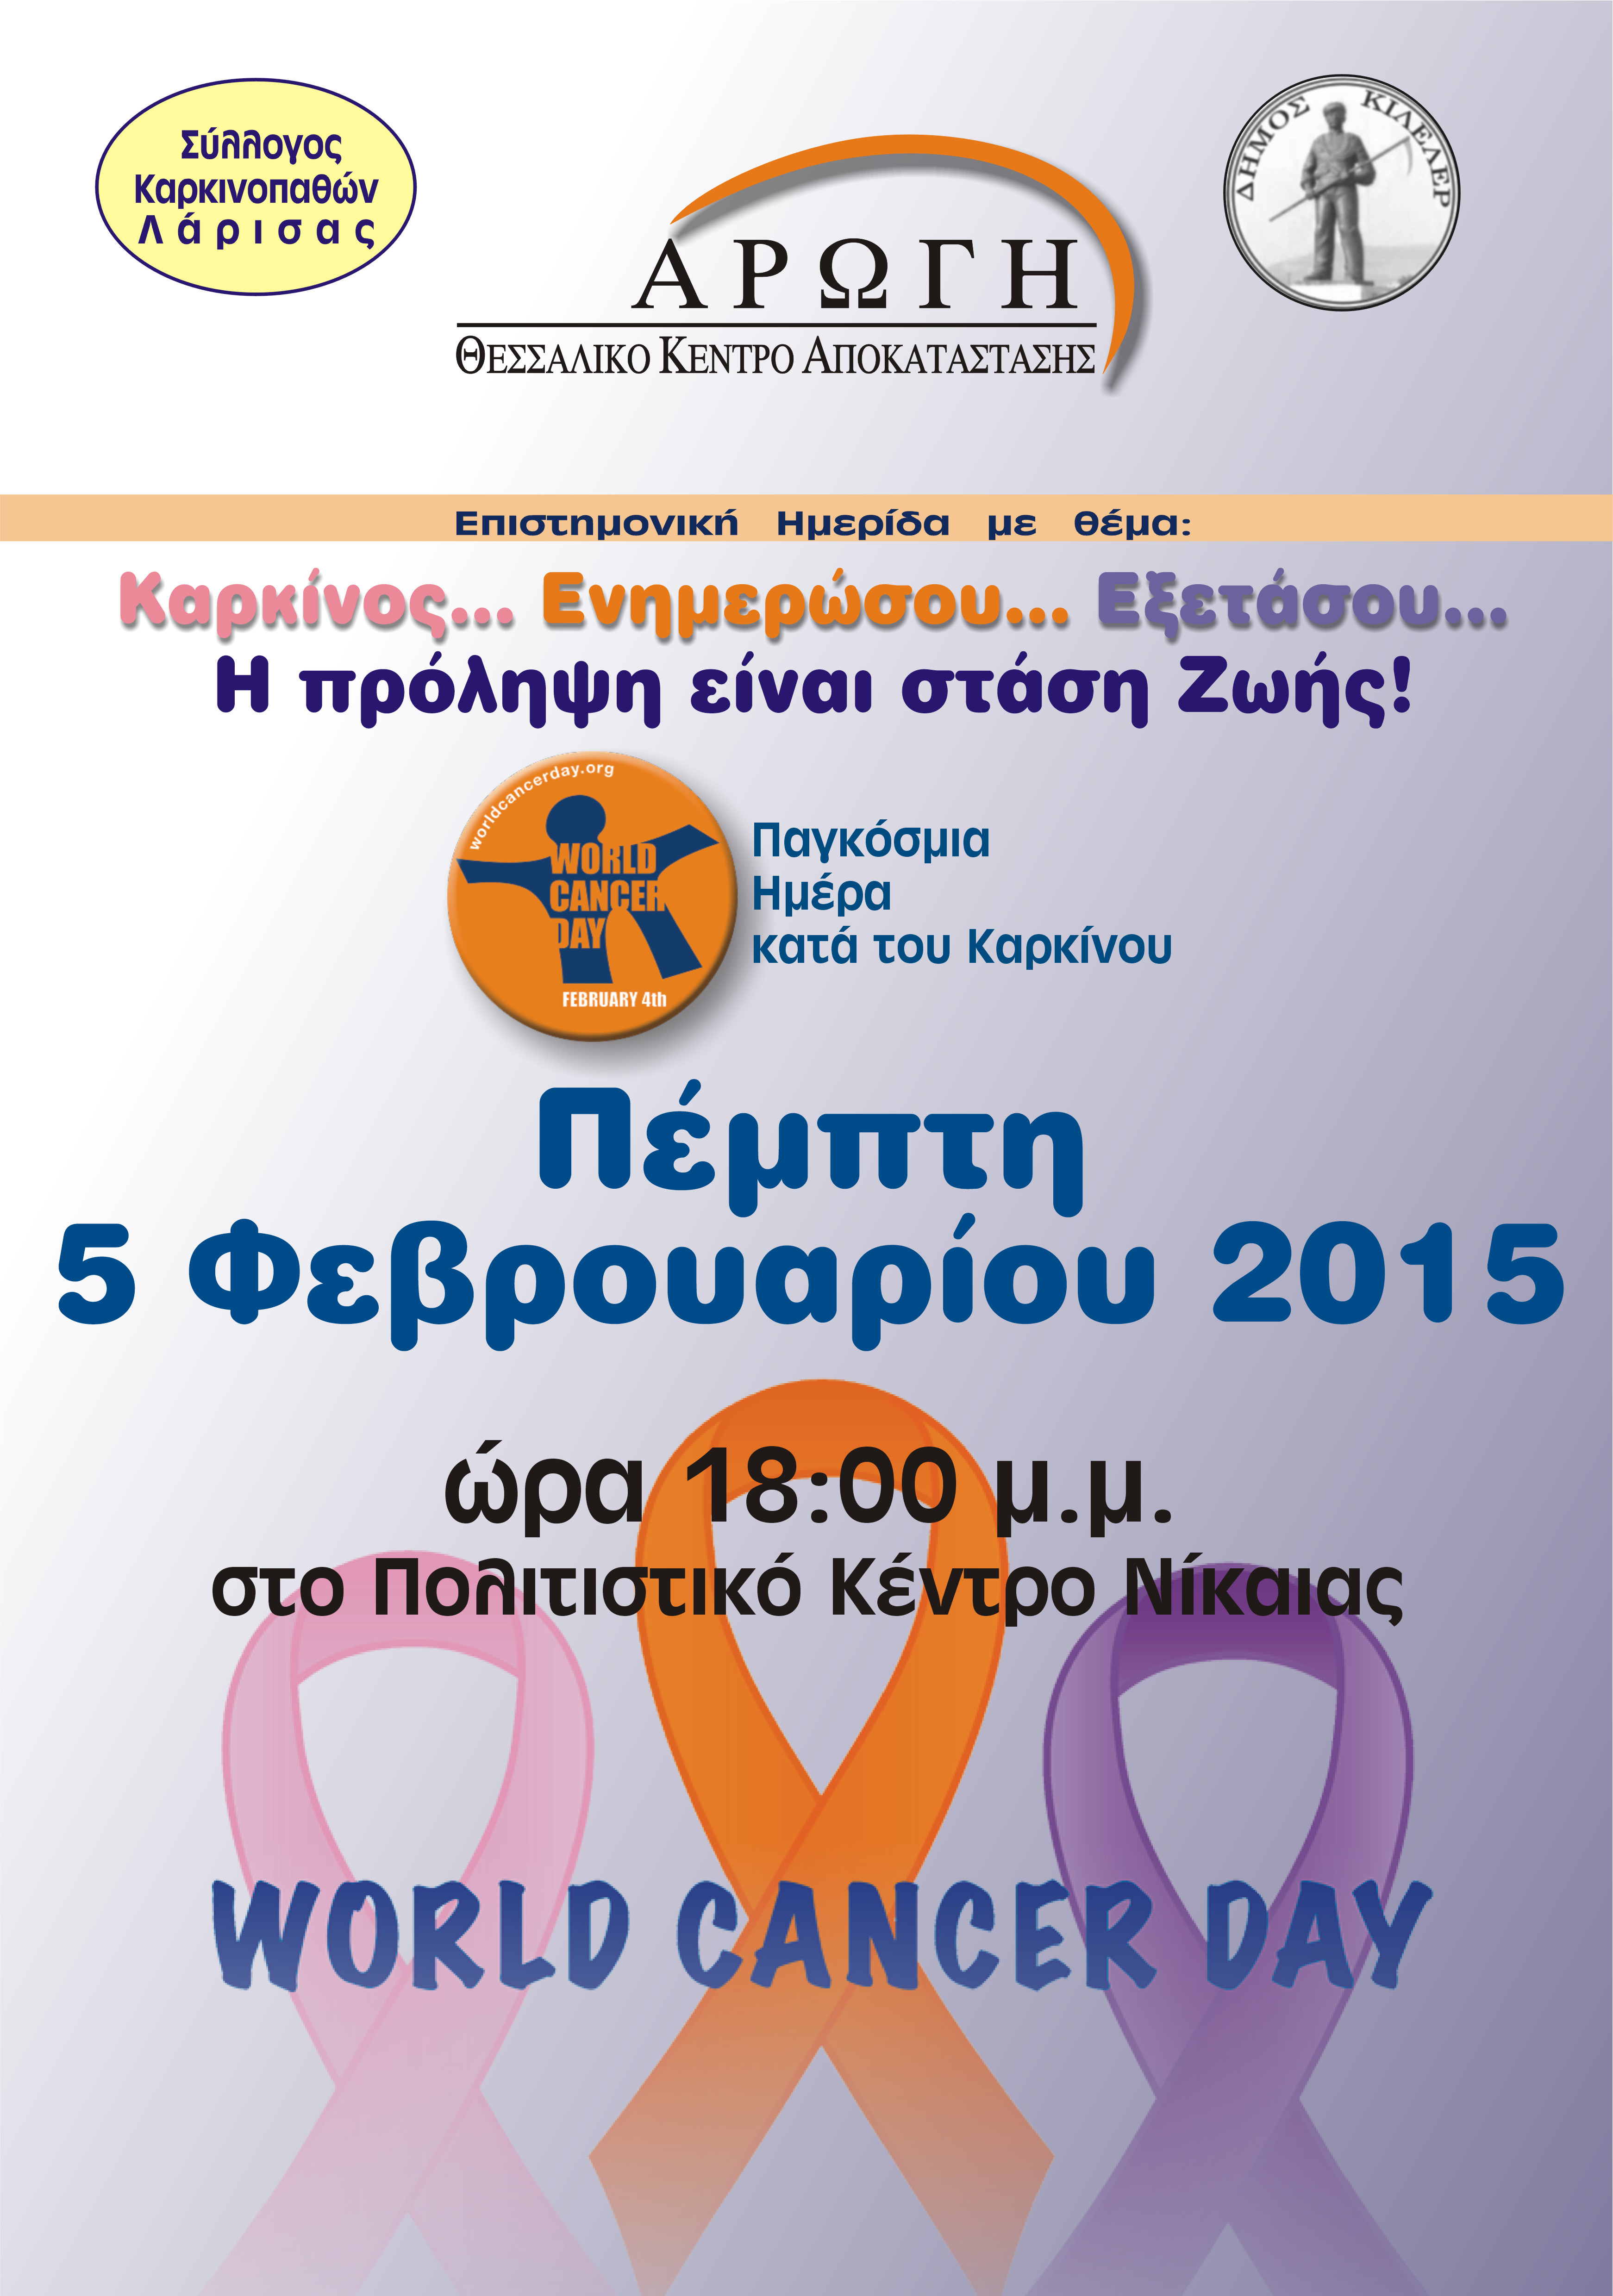 Εκδήλωση με αφορμή την Παγκόσμια Ημέρα Κατά του Καρκίνου